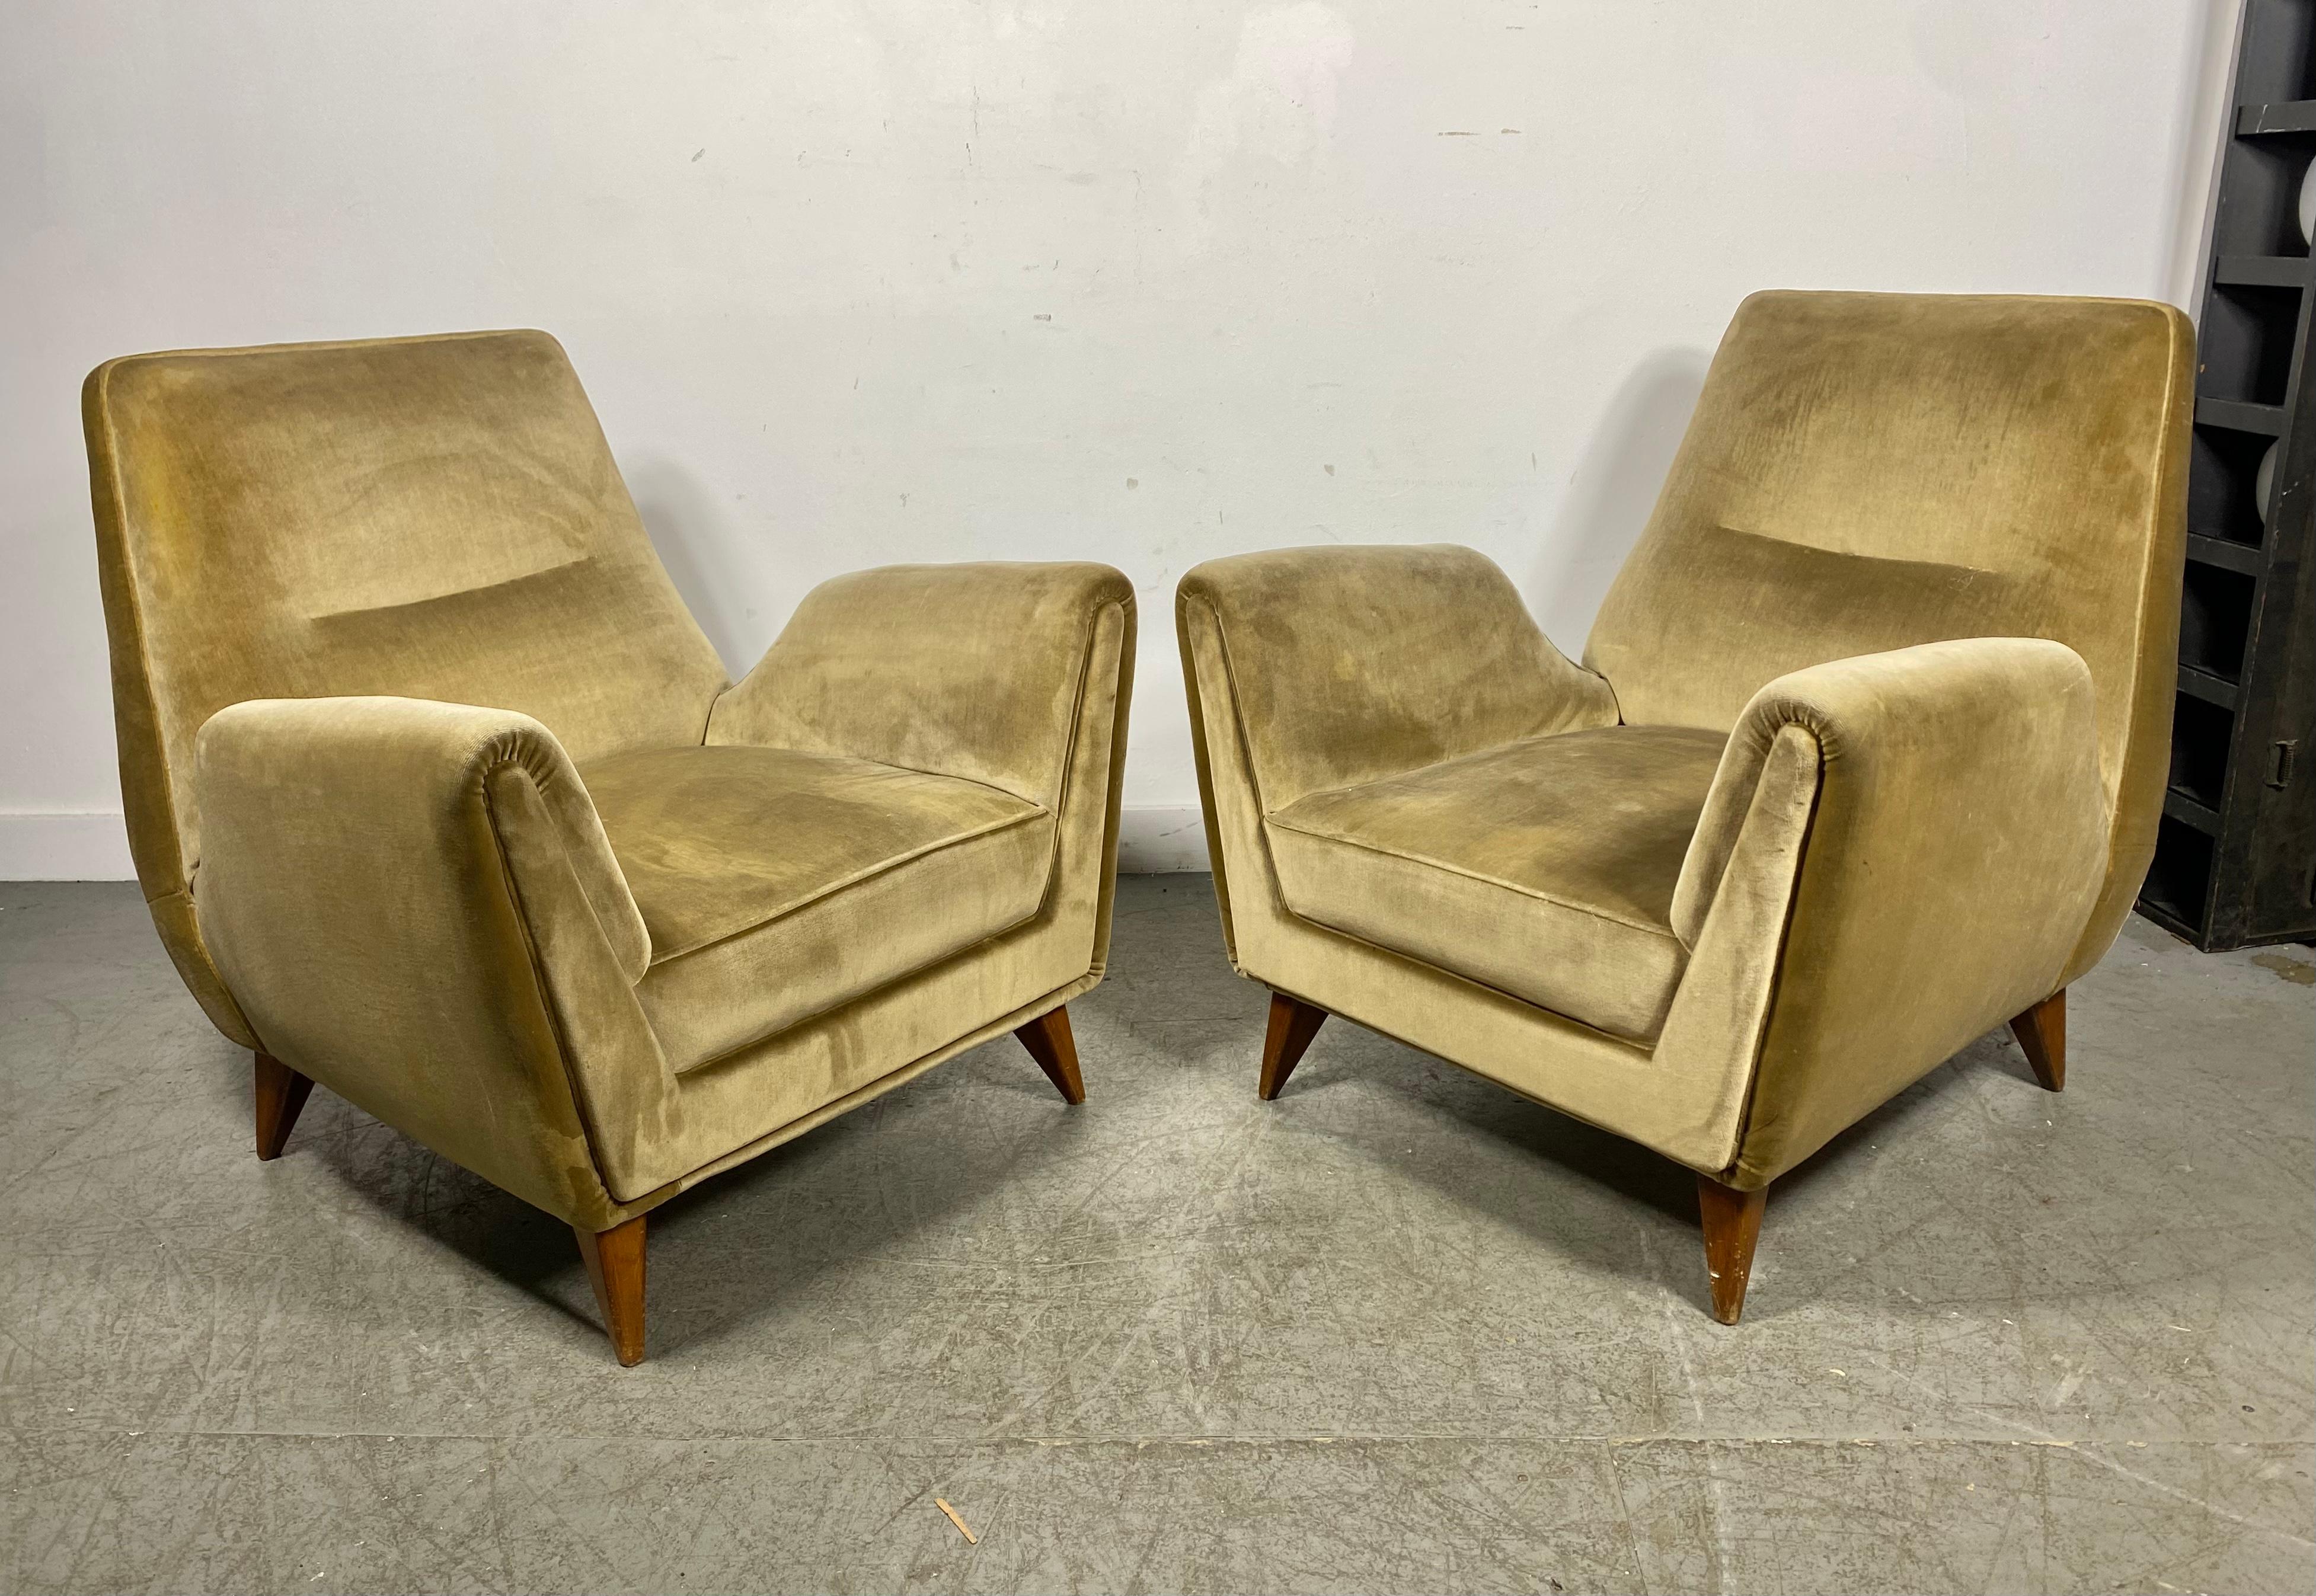 Stunning Pair Italian Modernist Lounge Chairs by Isa Bergamo & Att Gio Ponti 5